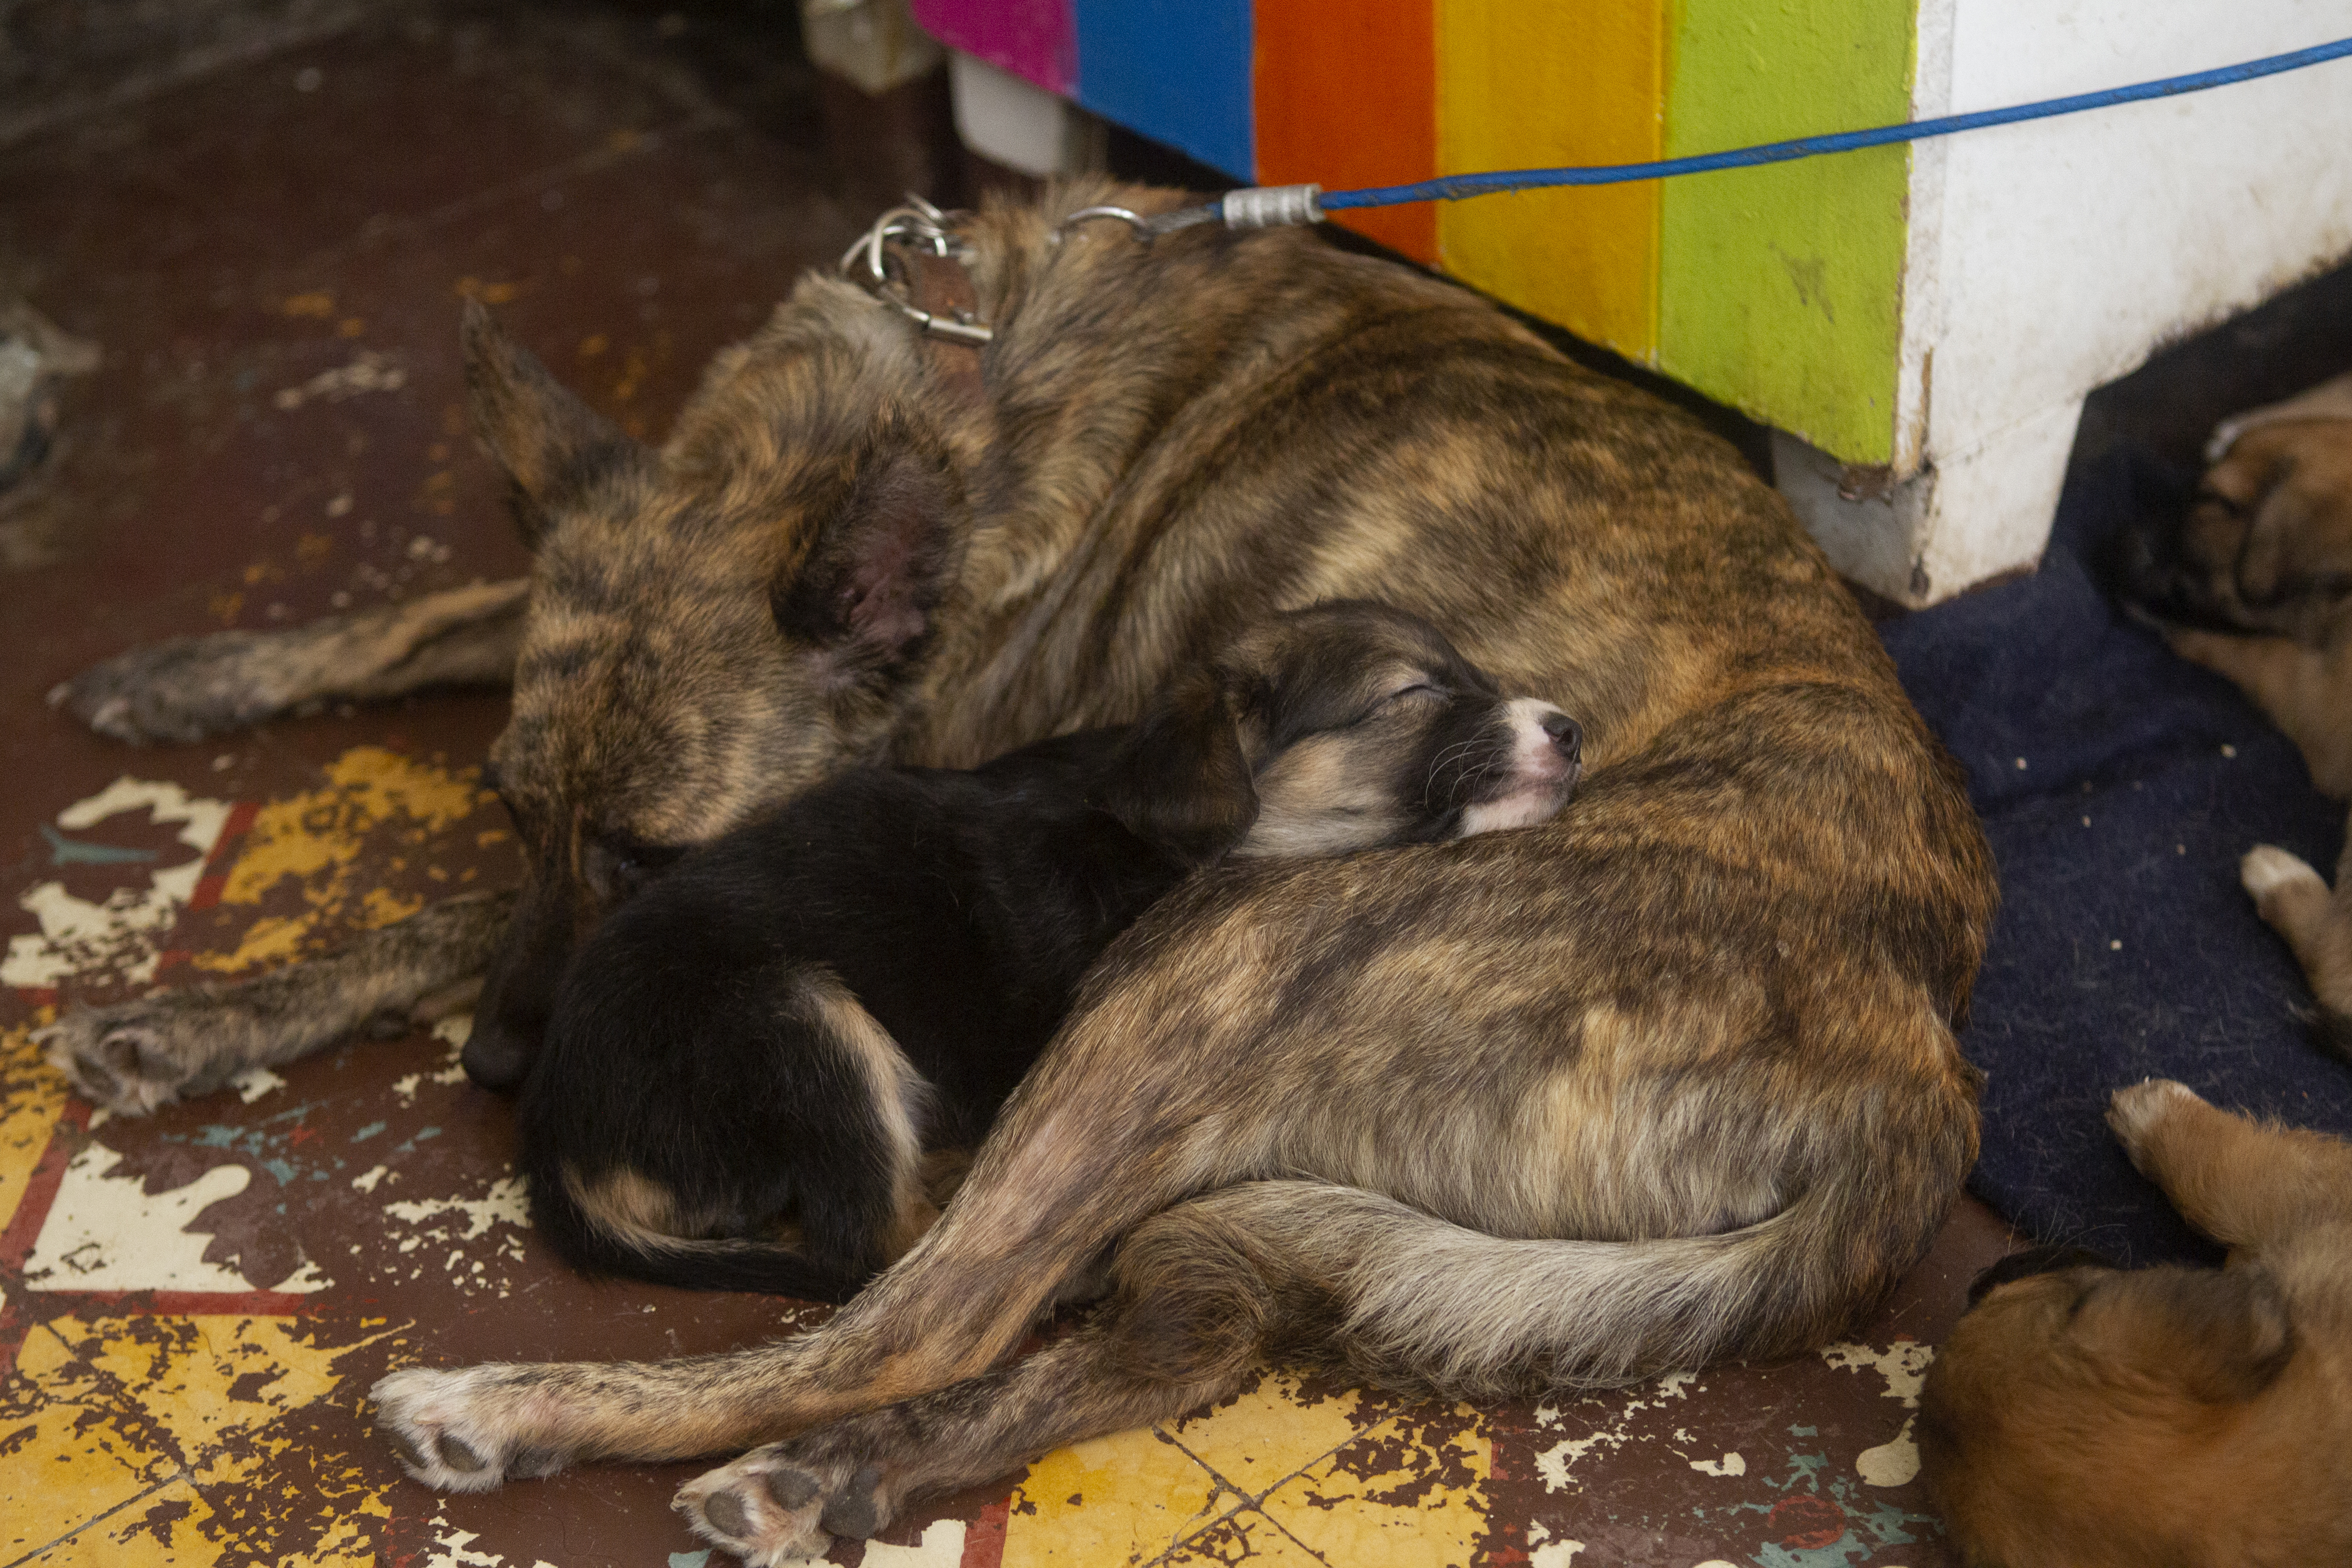 Madre a lado de su cachorro rescatados en Adopta Amor, albergue dedicado al rescate de perros y gatos. Ciudad de México, mayo 28, 2021.Foto: Karina Hernández / Infobae